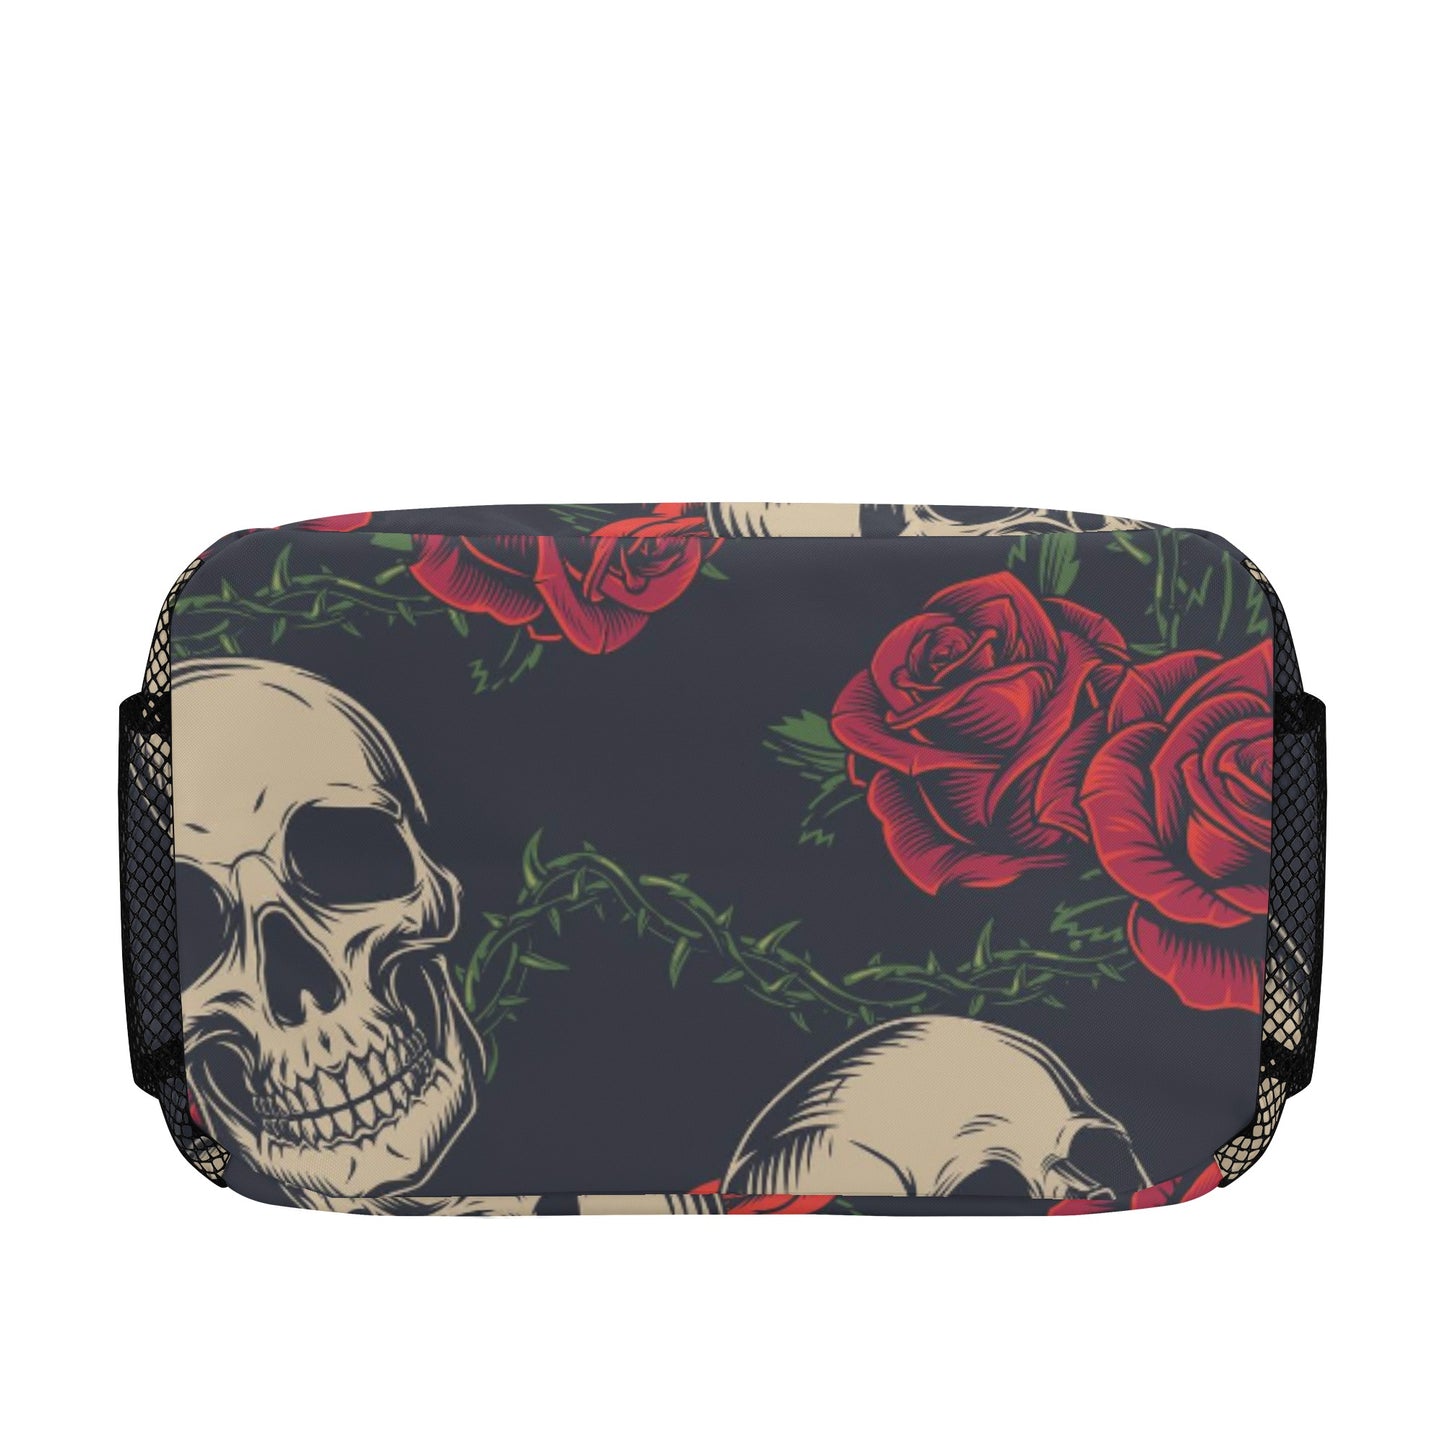 Rose floral skull  Lunch Bag